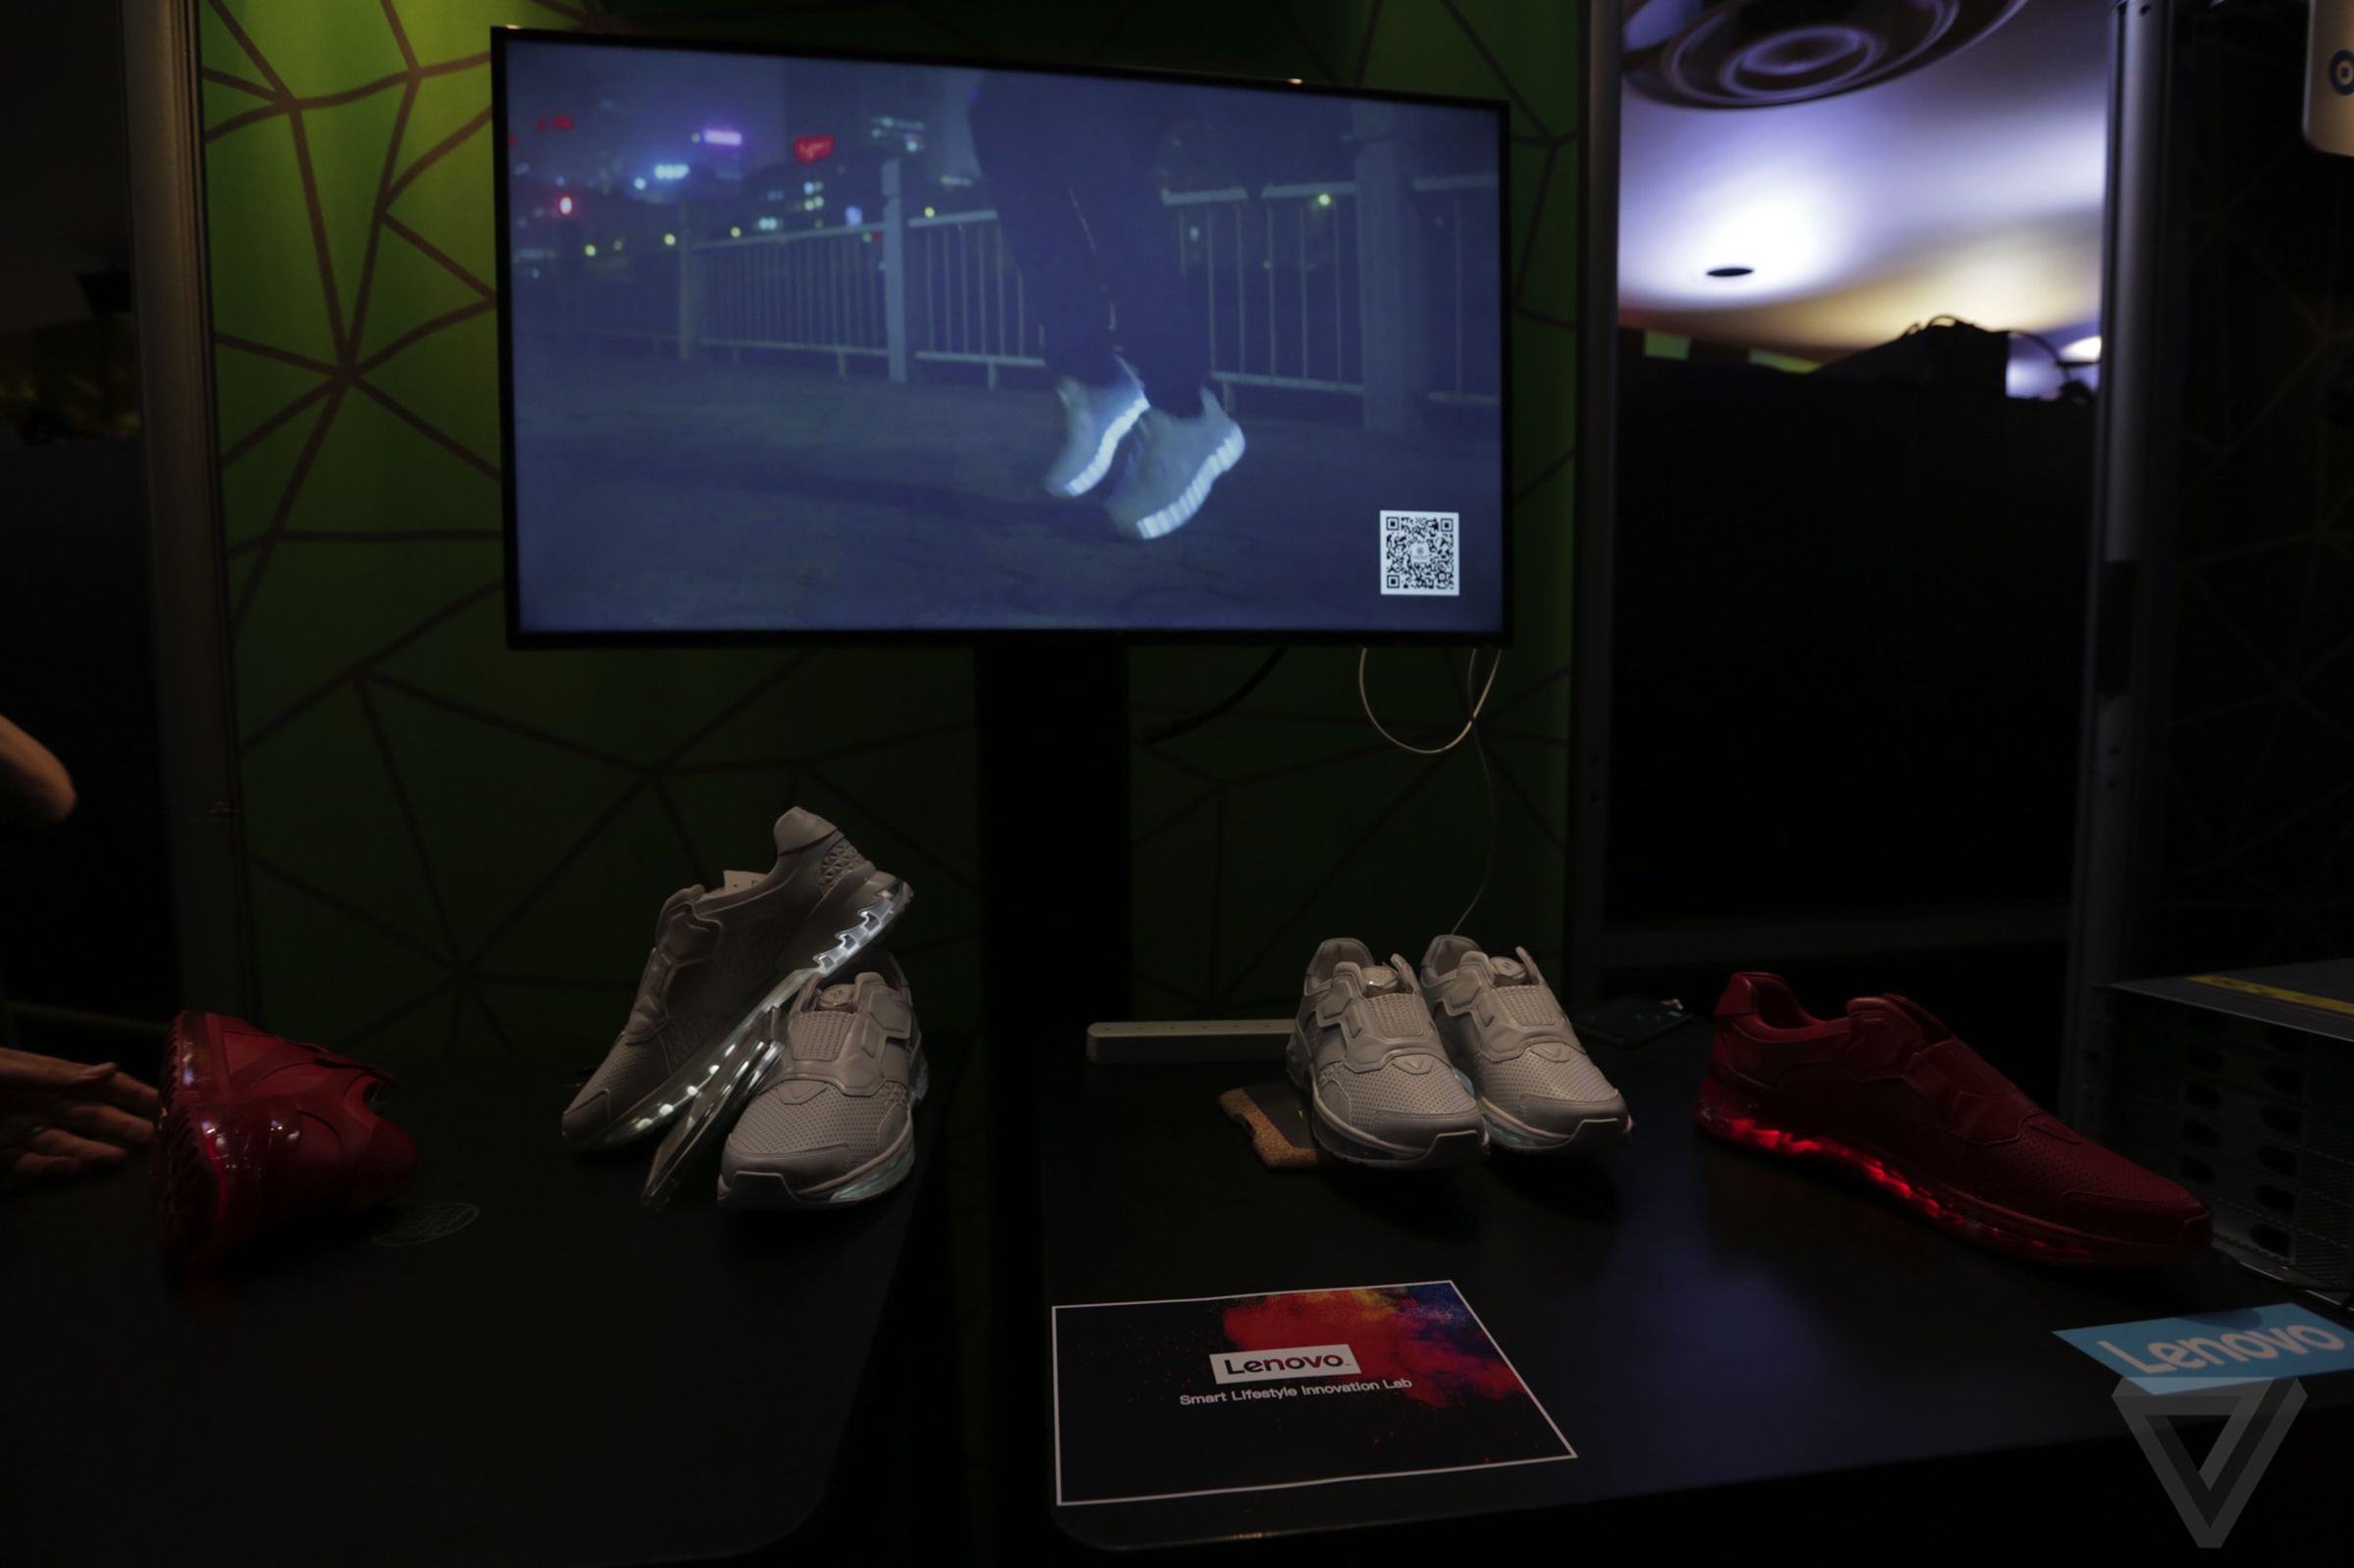 Lenovo's smart running shoe at Tech World 2016